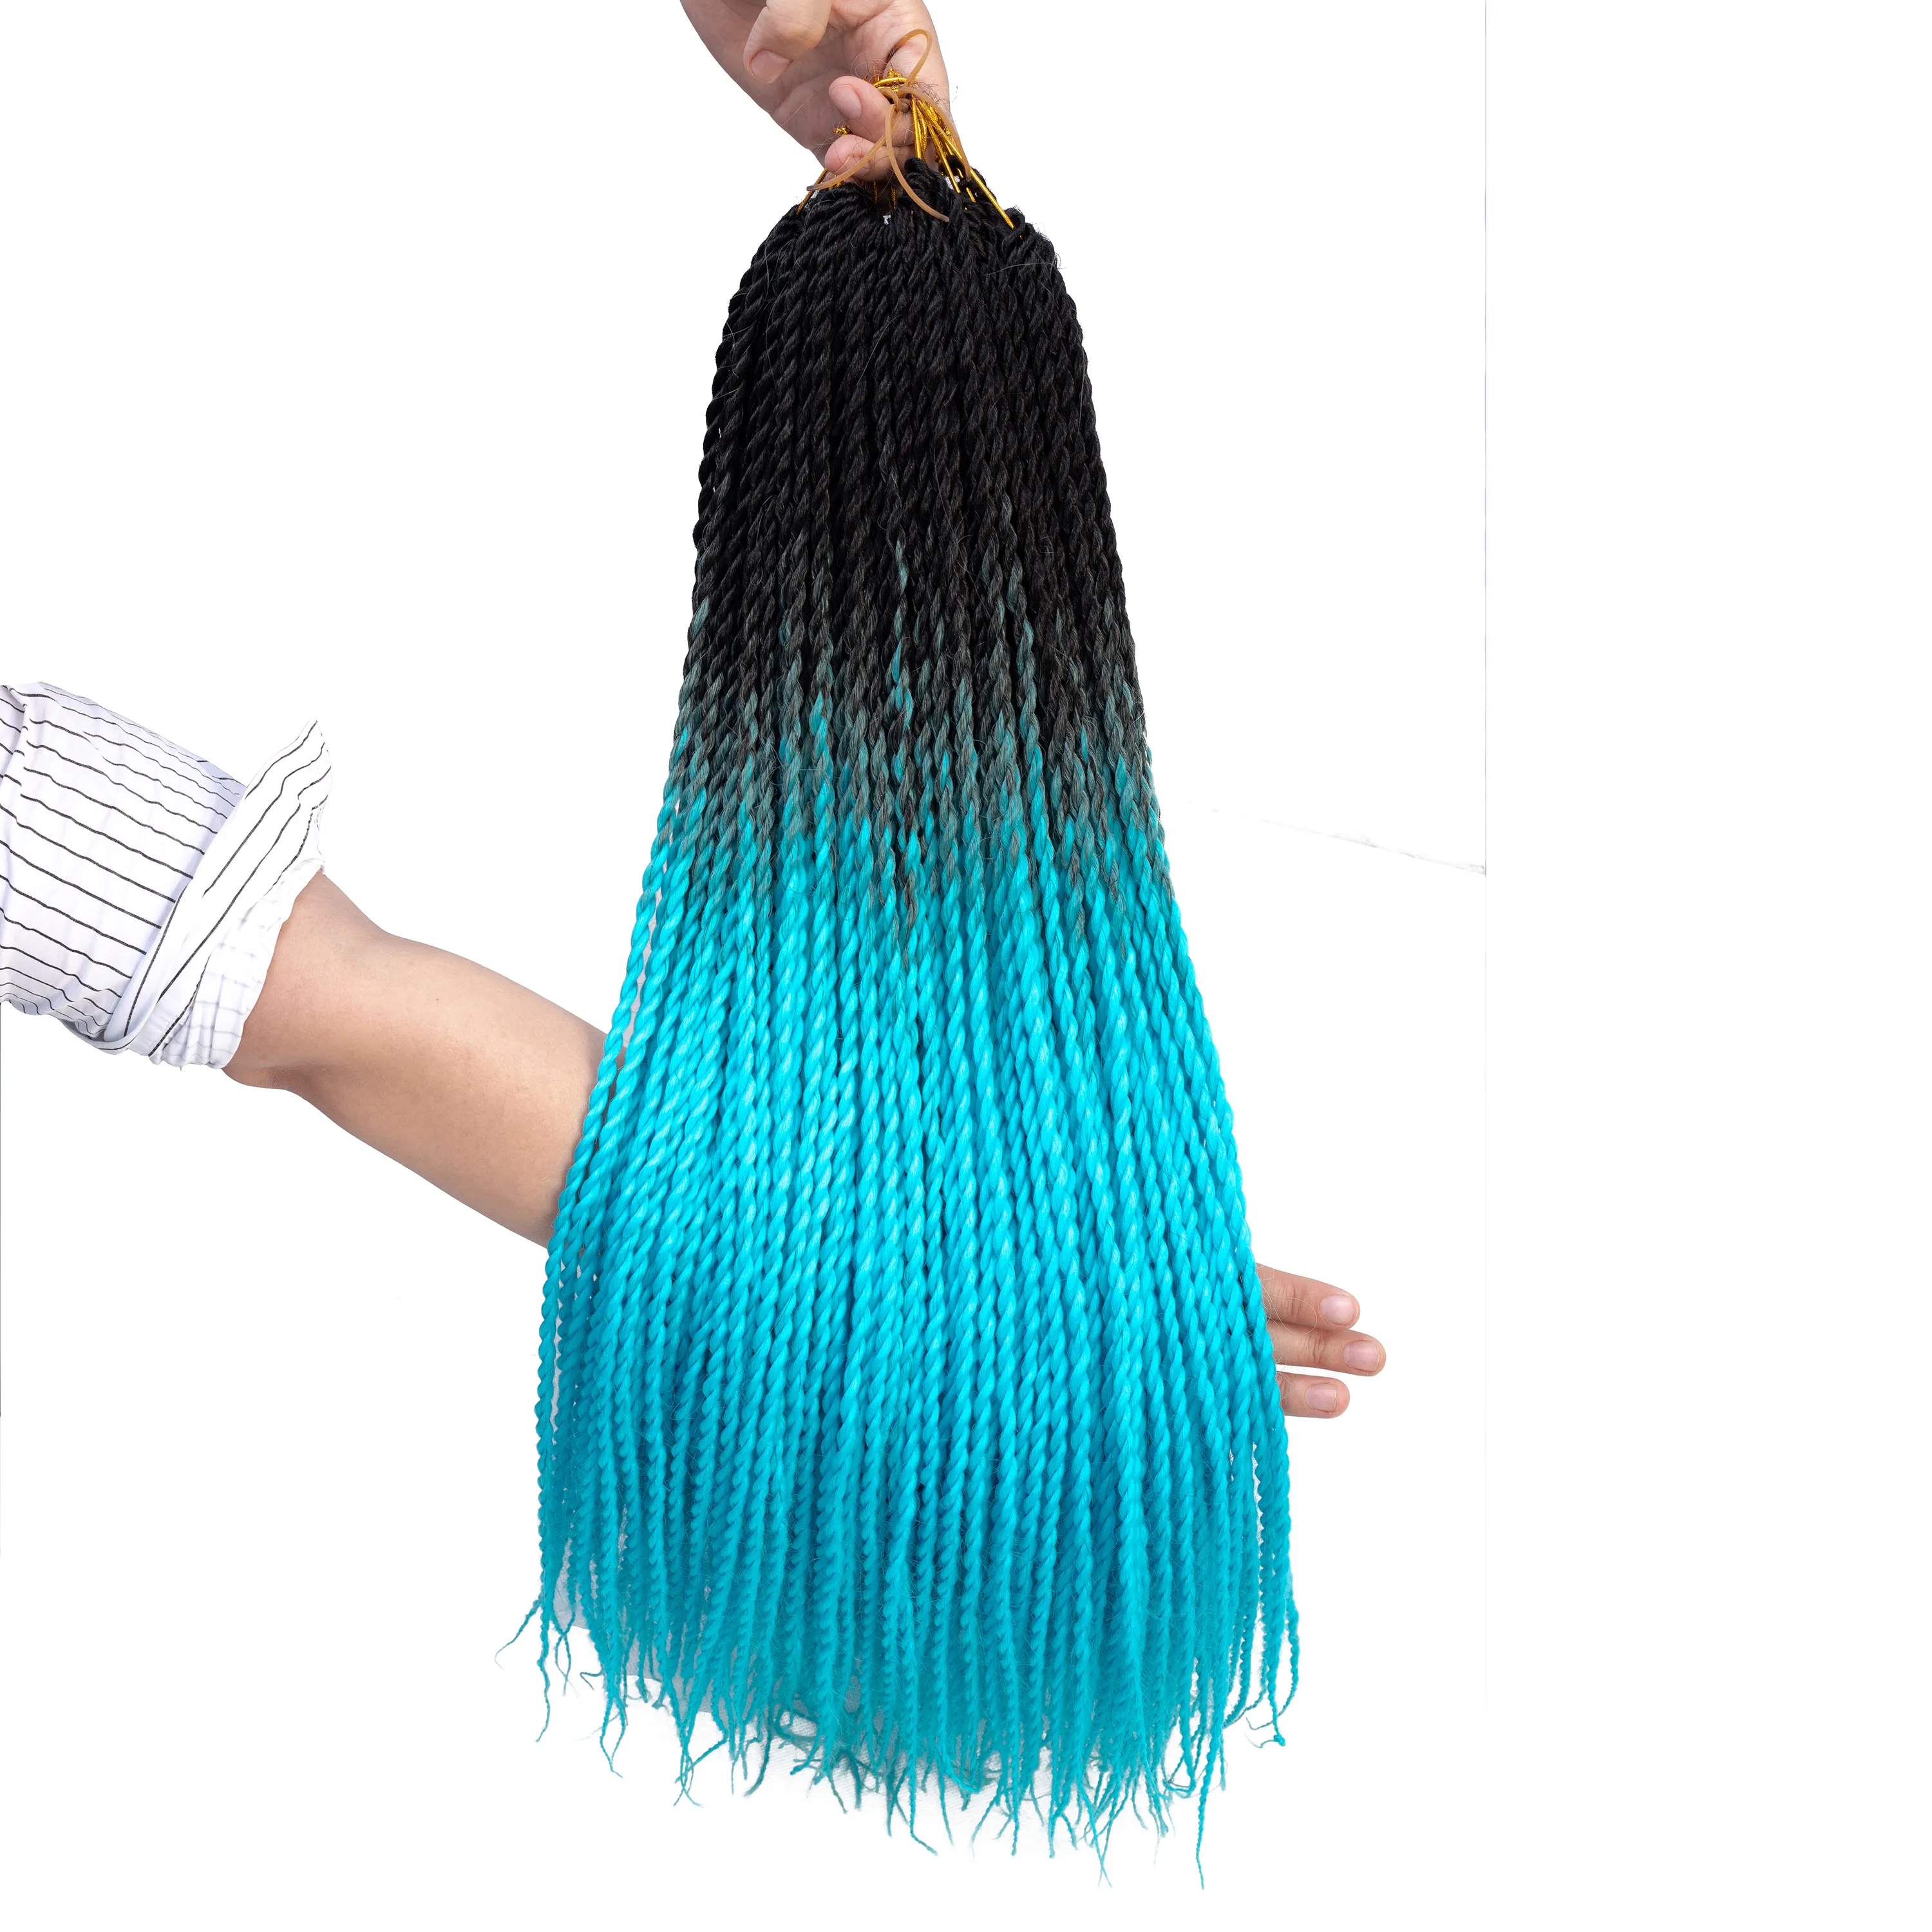 MYZYR 20 inç örgü saç uzantıları Jumbo tığ örgüler sentetik saç stili 100 g/adet saf sarışın pembe yeşil